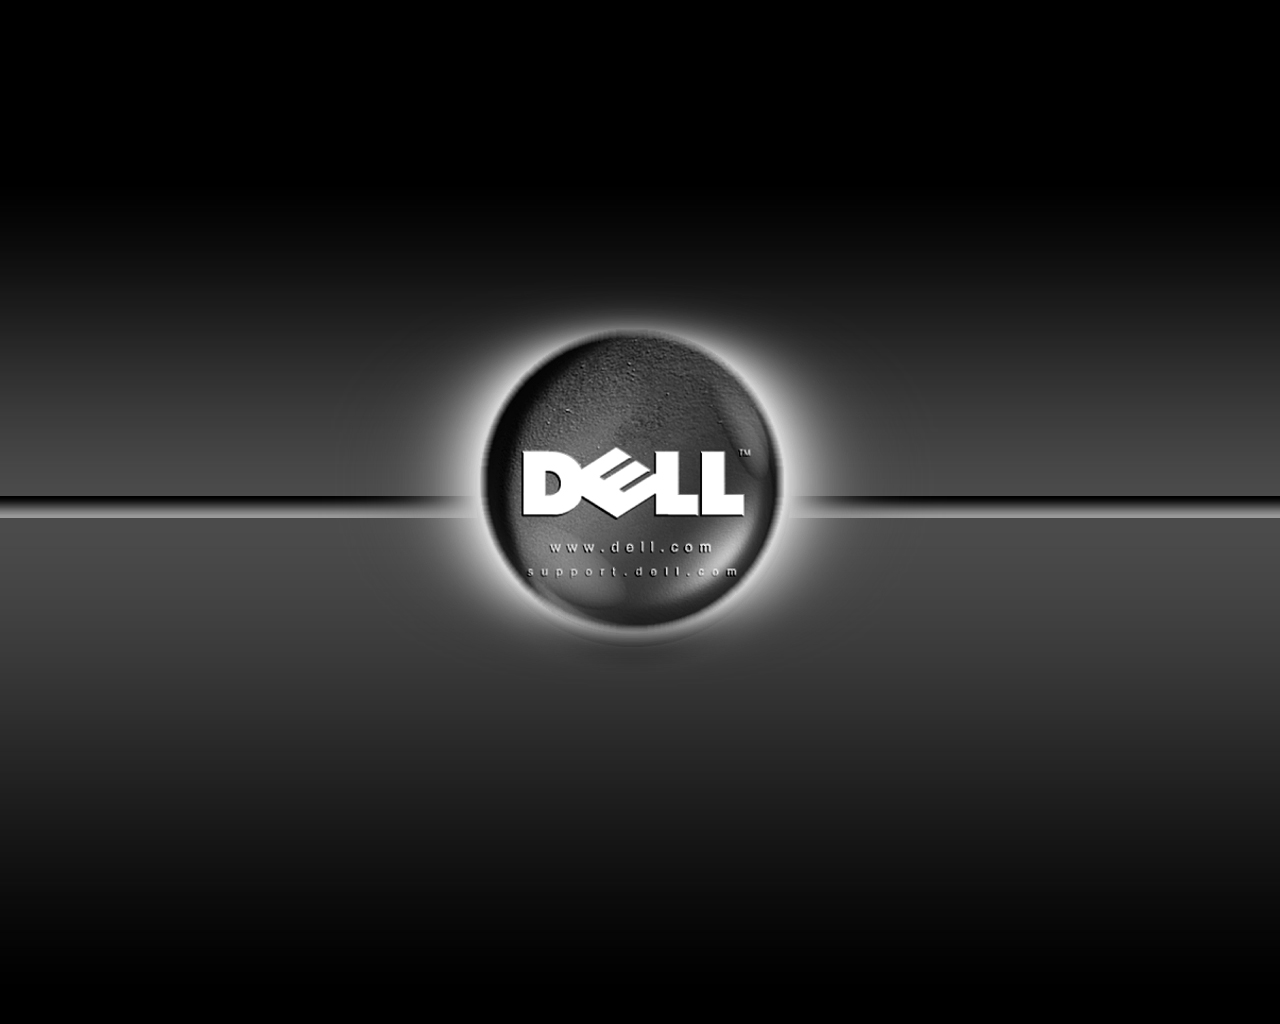 Dell Desktop Background (69+ images)